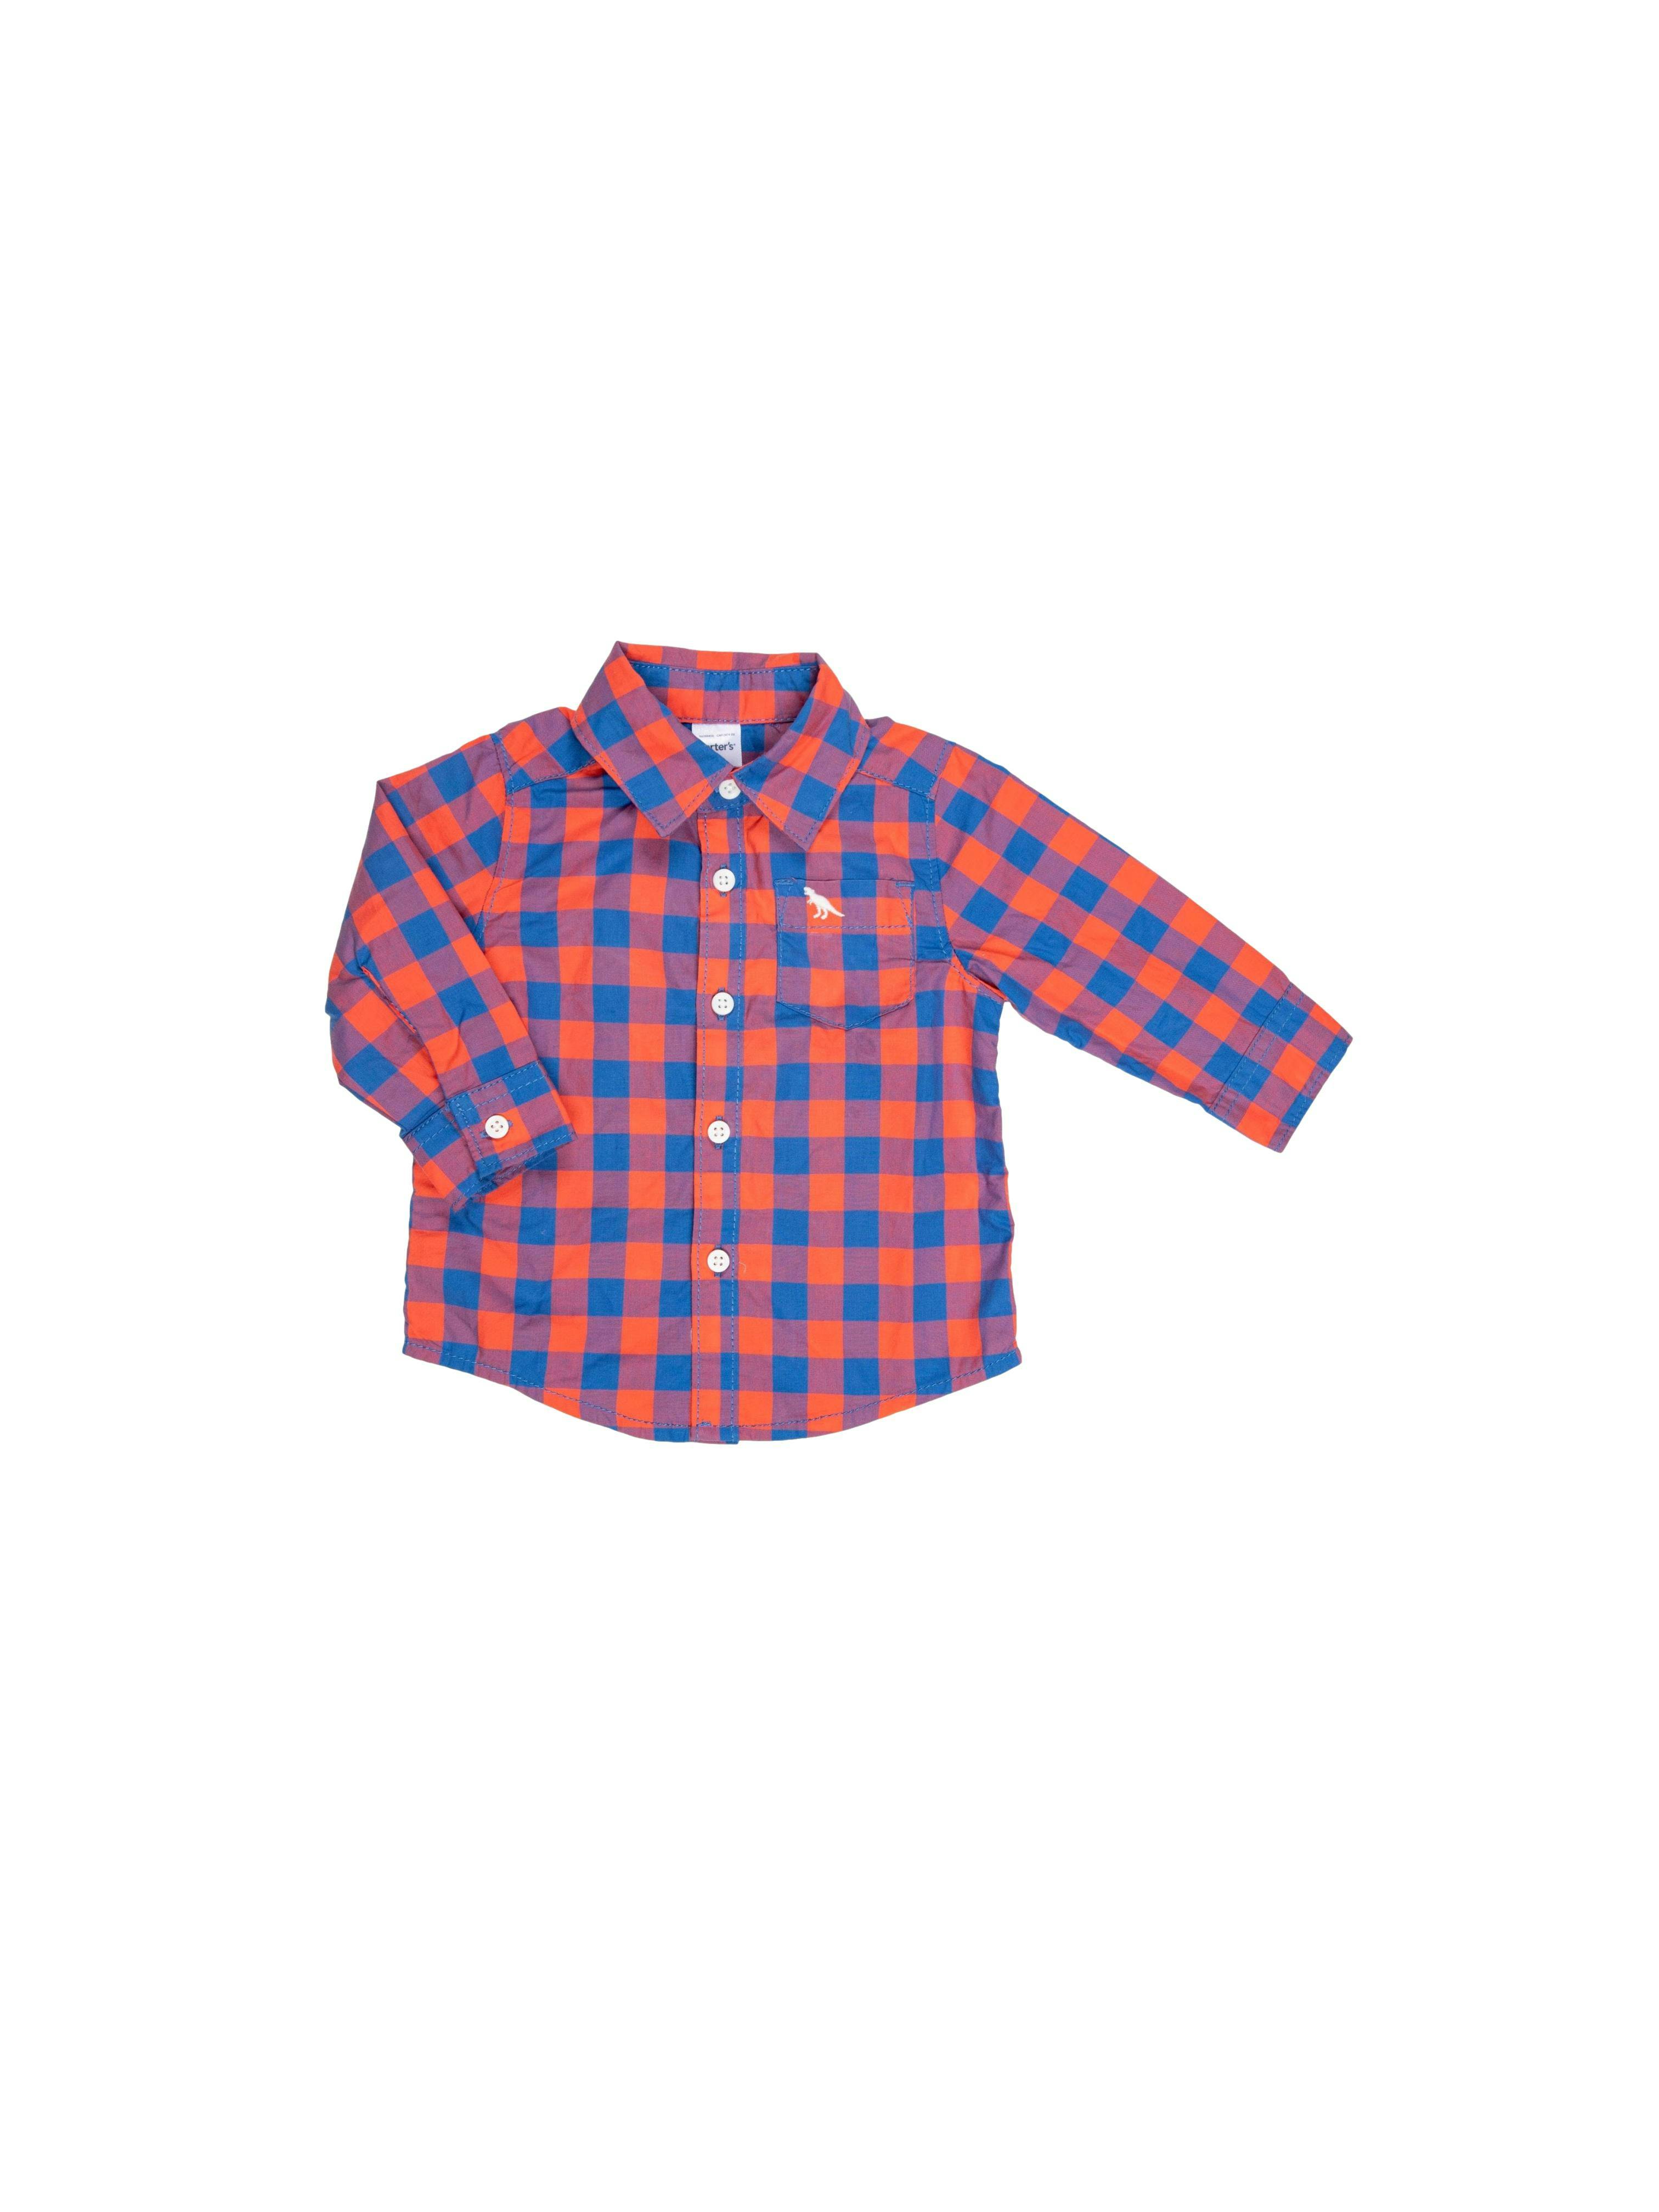 camisa roja con azul a cuadros 100% algodón - Carter's